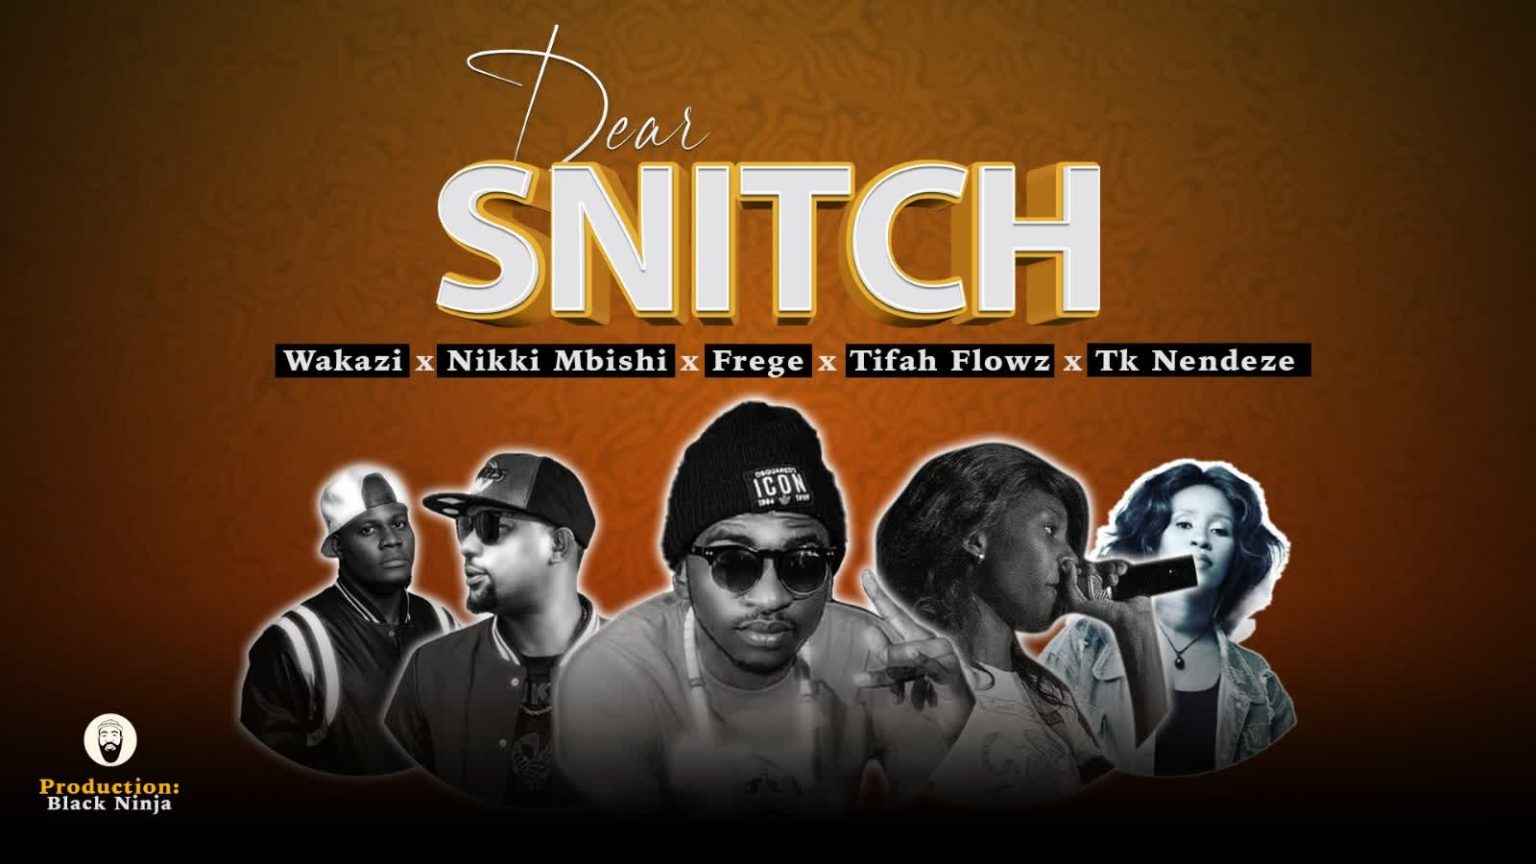 Download Audio | Frege X Nikki Mbishi X Tifa Flowz X Wakazi & Tk Nendeze – Dear Snitch